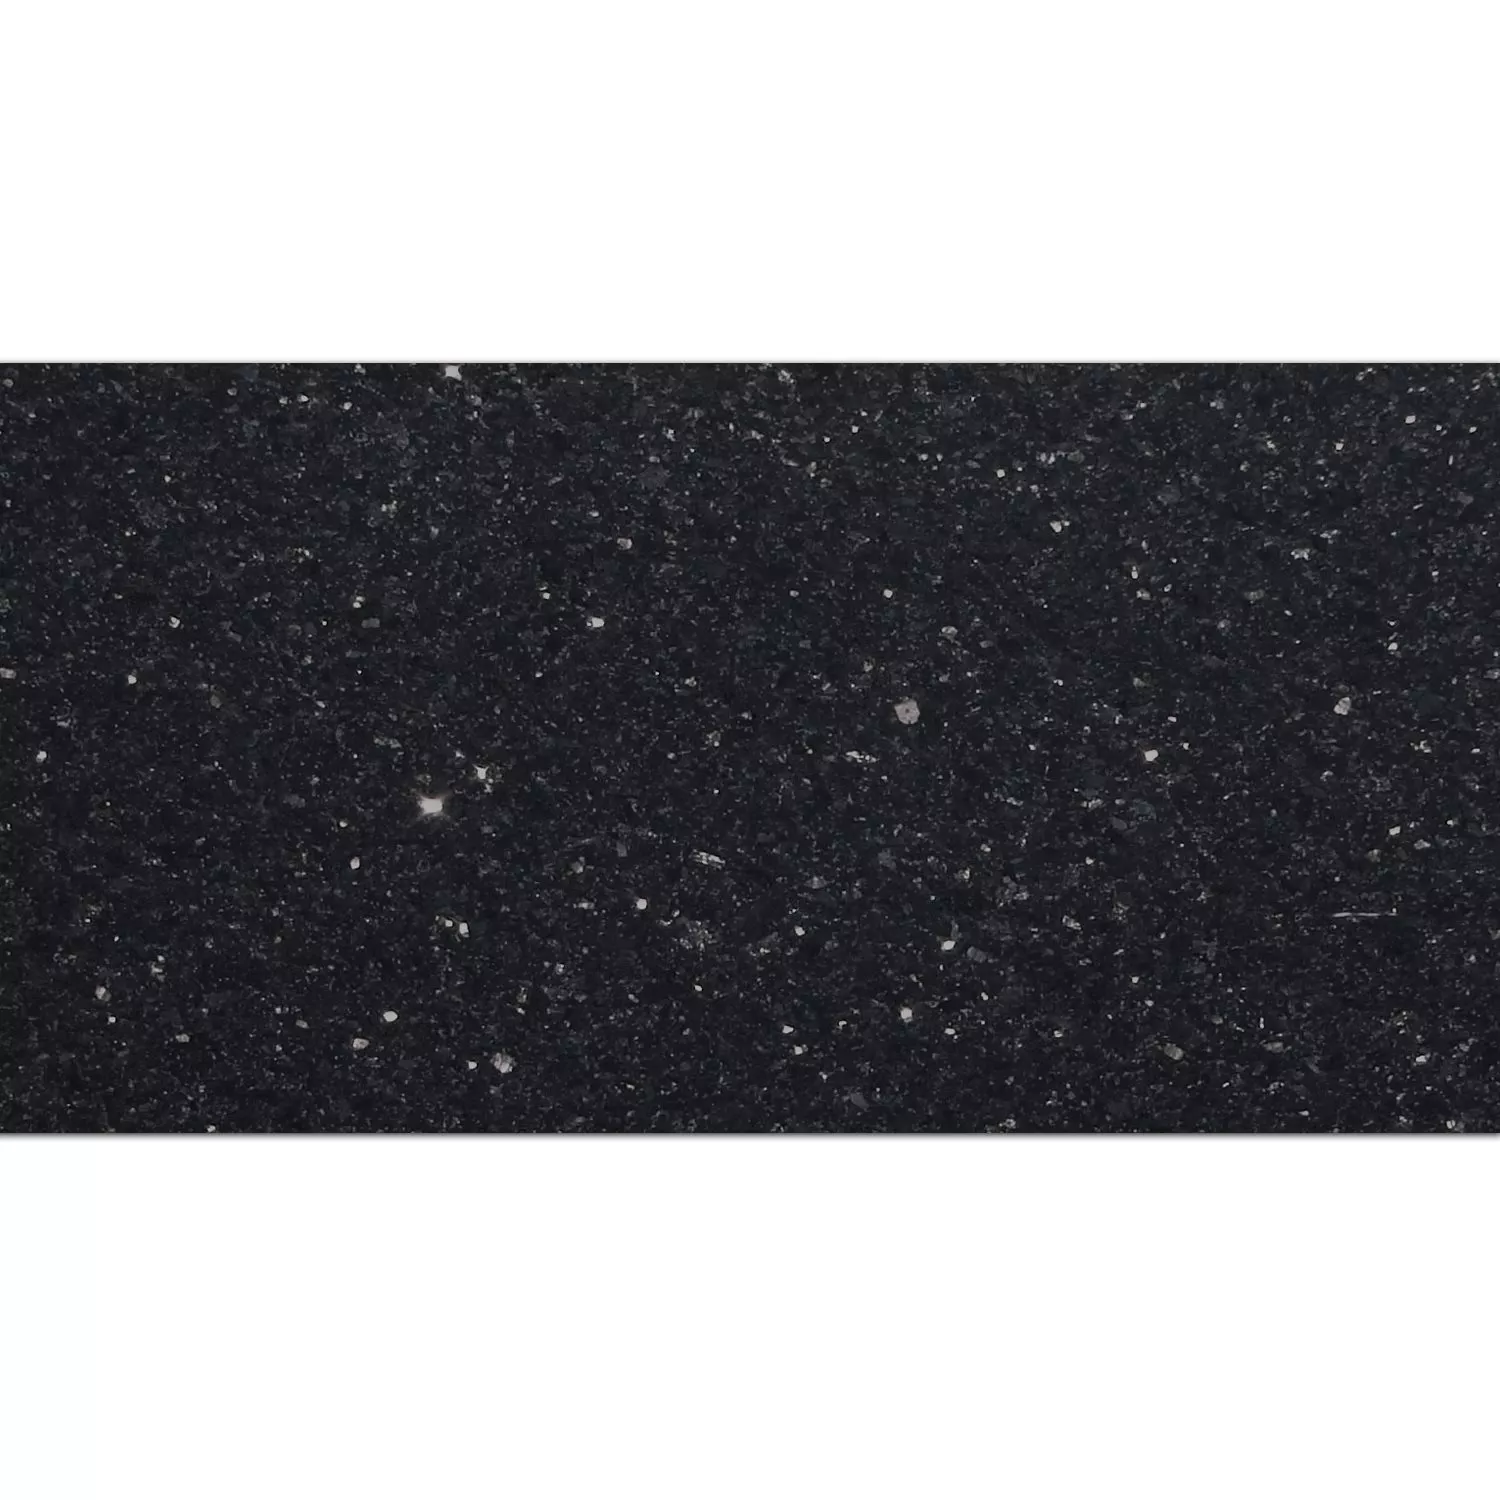 Πλακάκια Aπό Φυσική Πέτρα Γρανίτης Star Galaxy Αμεμπτος 30,5x61cm